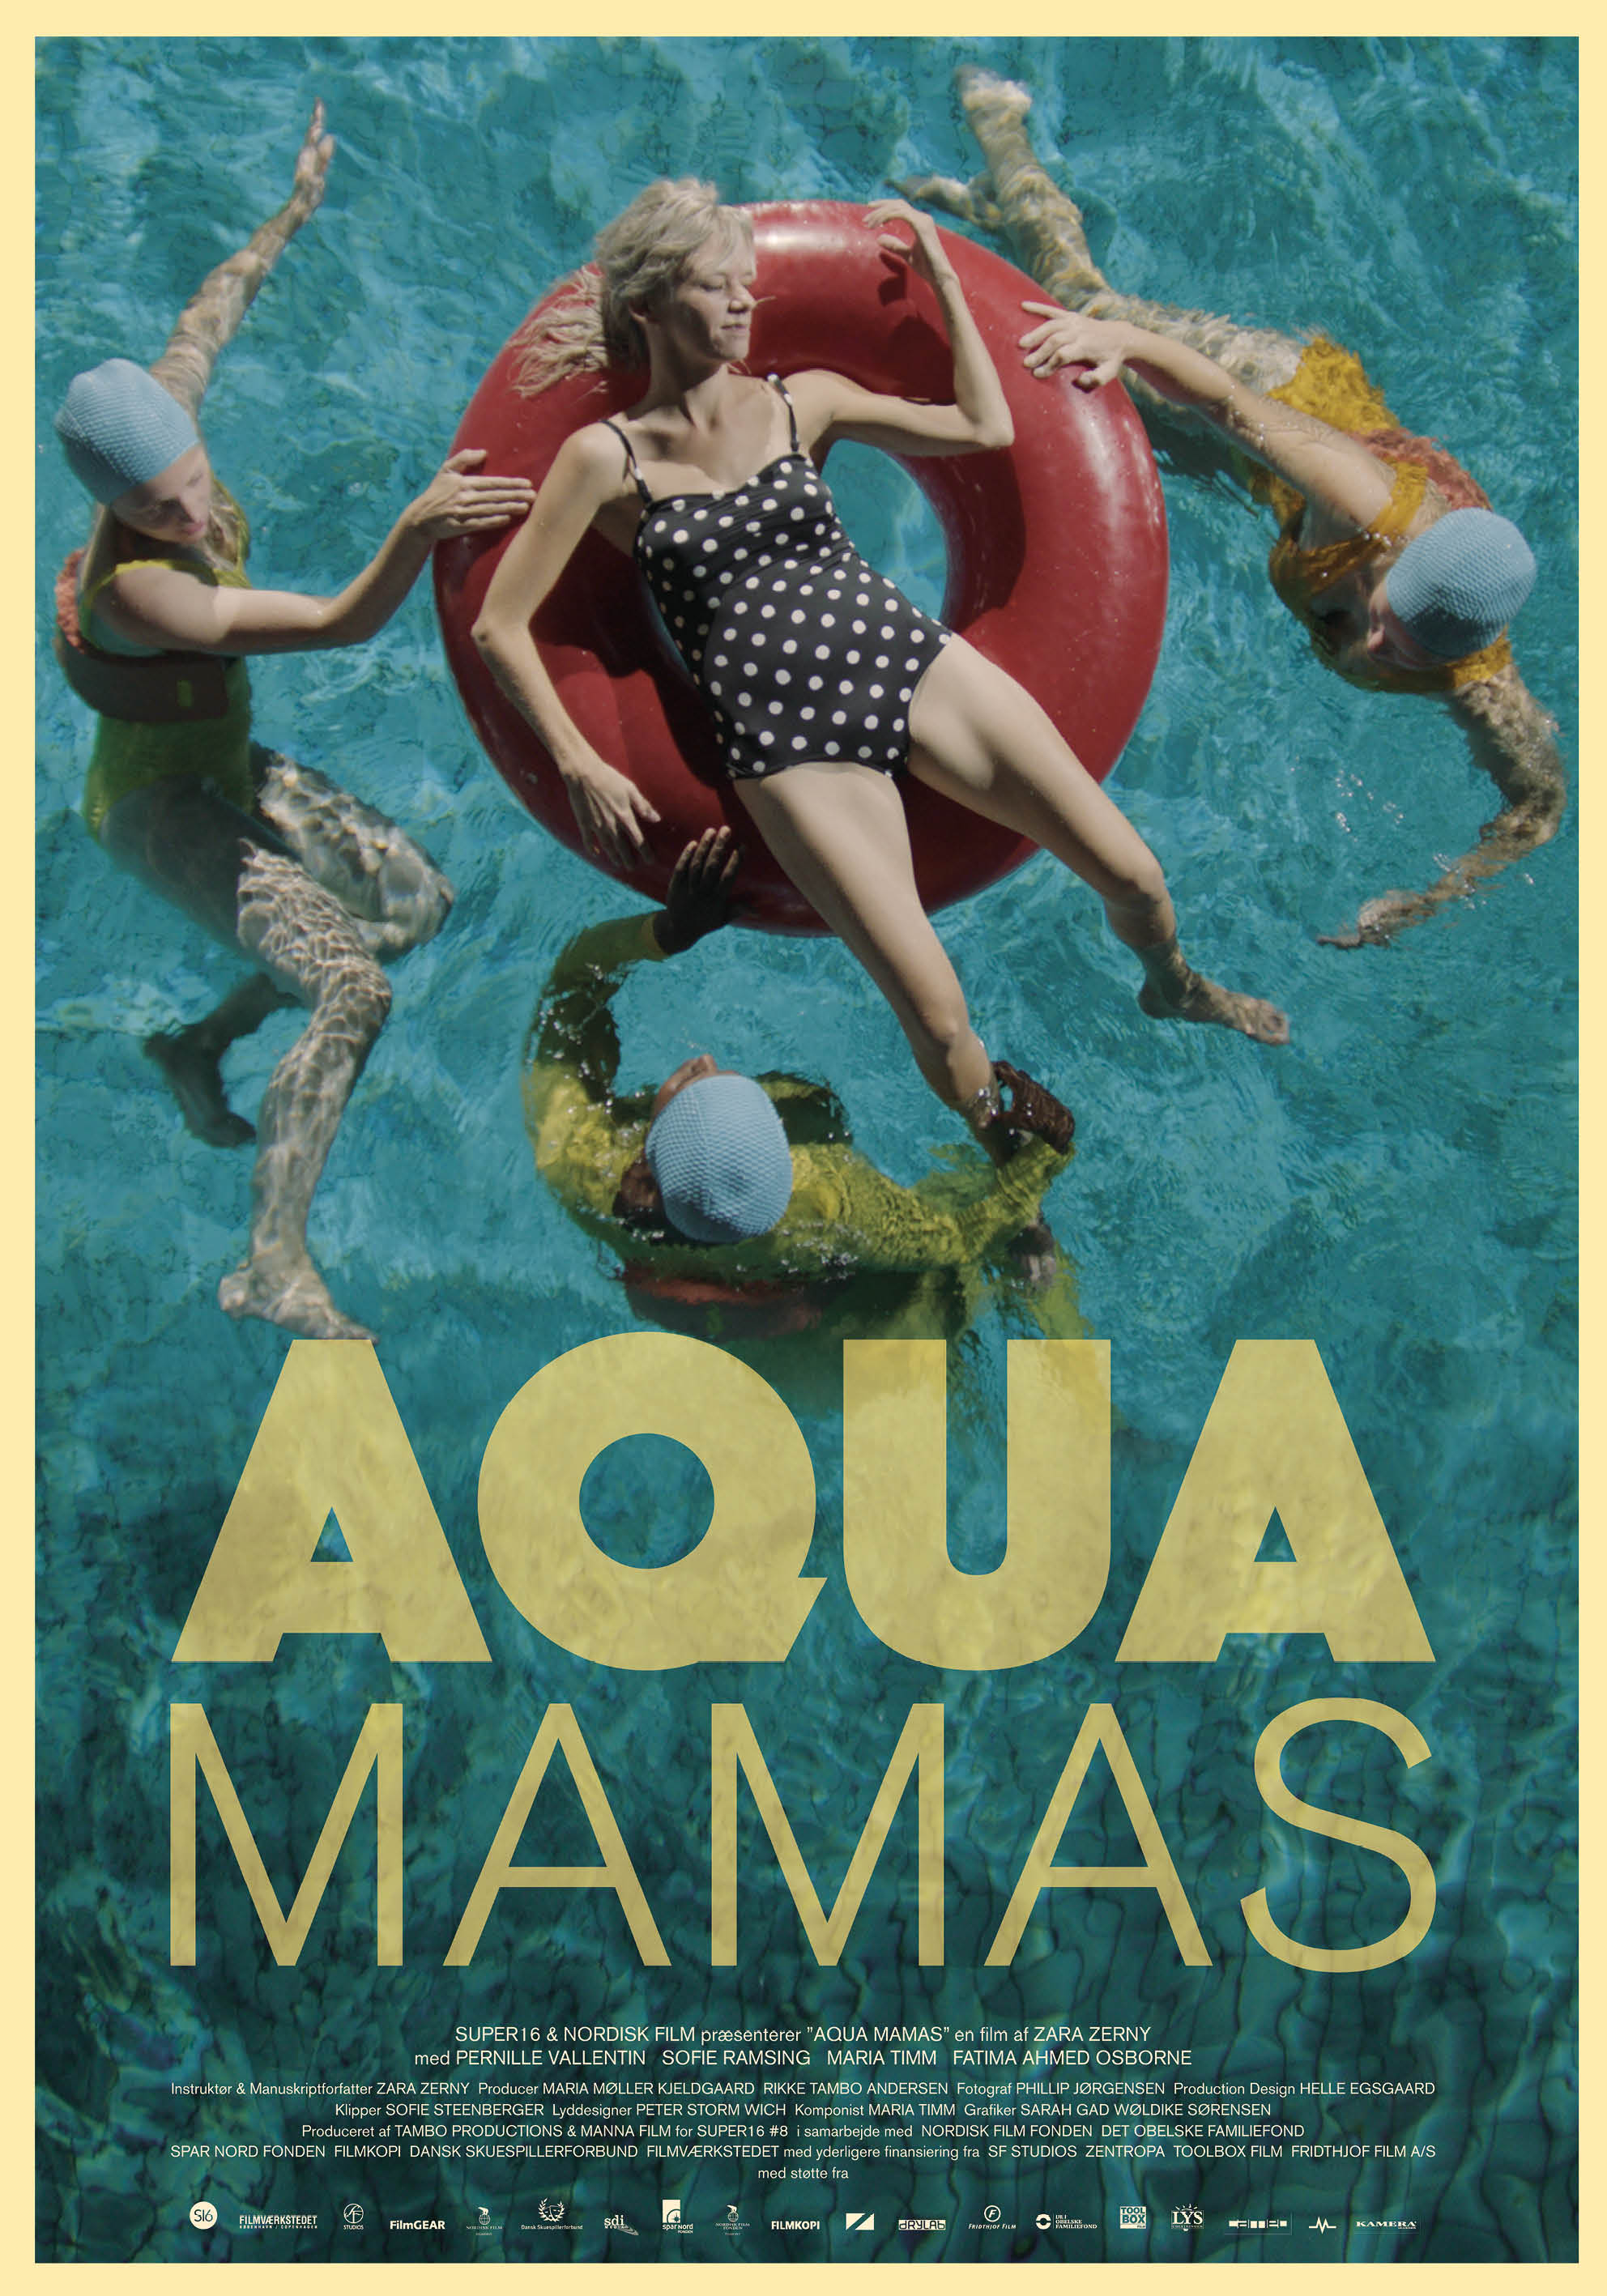 Aqua Mamas